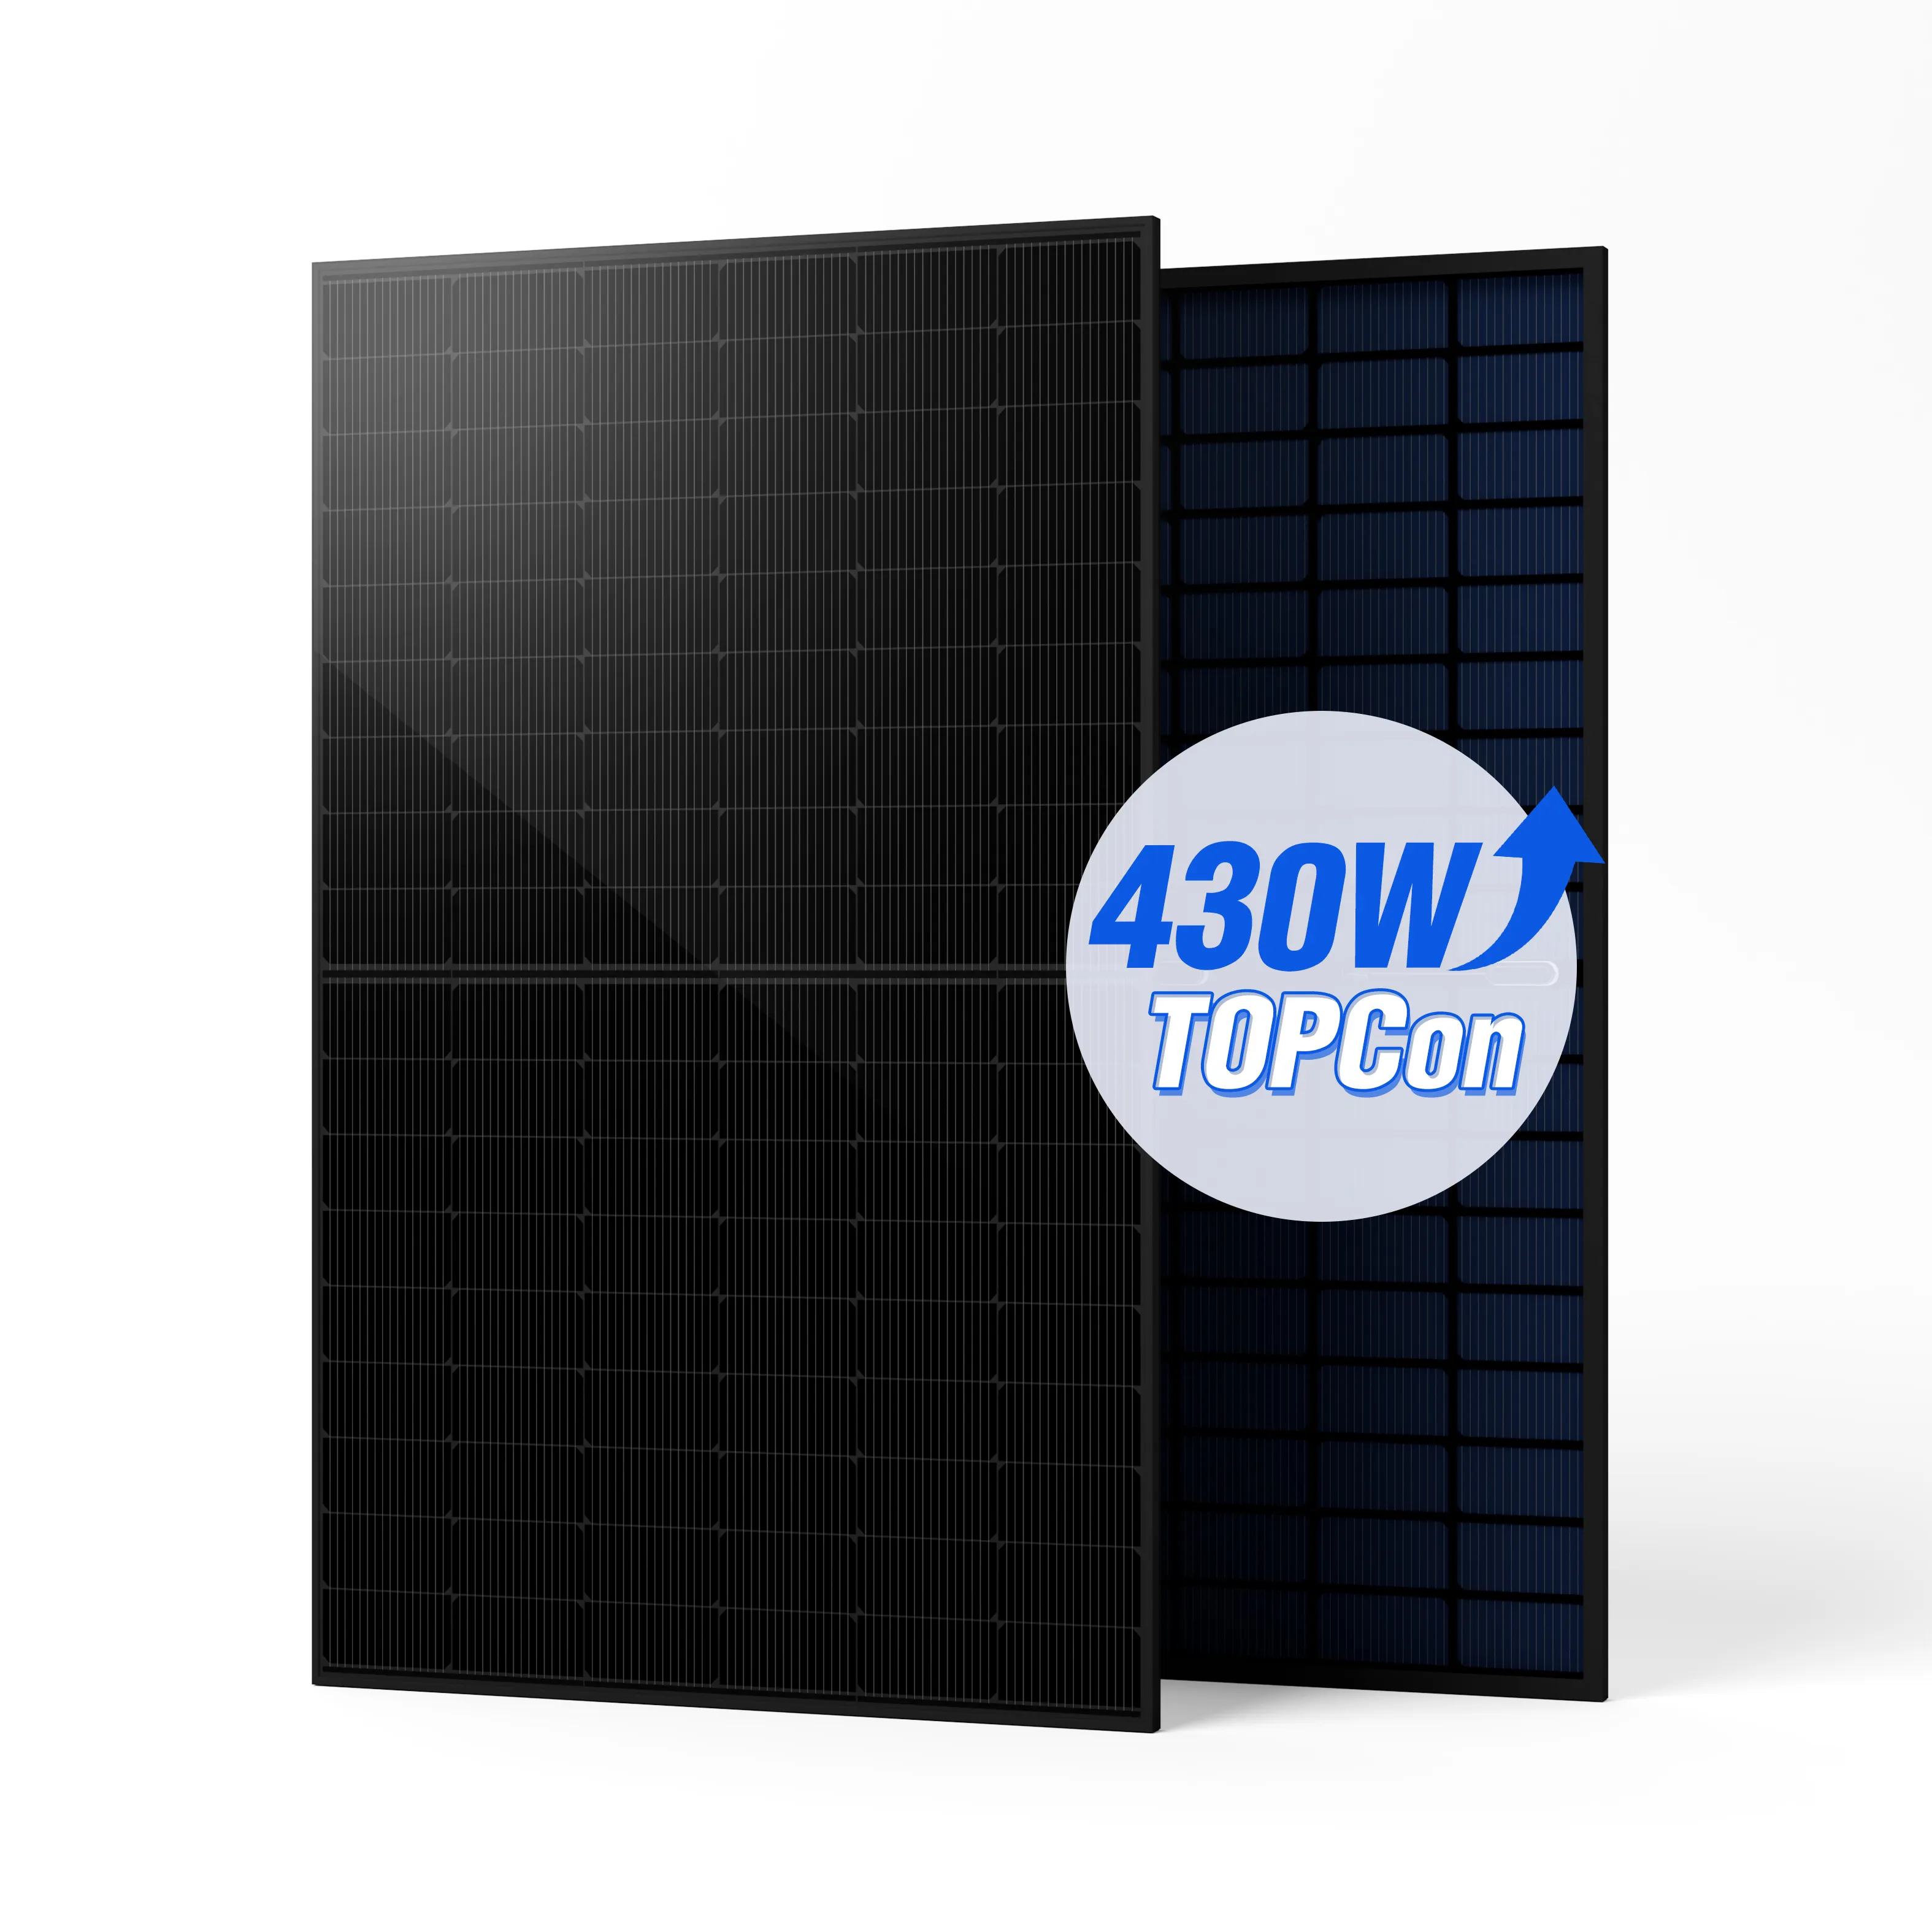 Off-Grid-Hybrid-Solarpanel in kundendefinierter Größe mit doppelglas 430 Watt kundendefinierter kompletter Kit für zuhause aus Deutschland